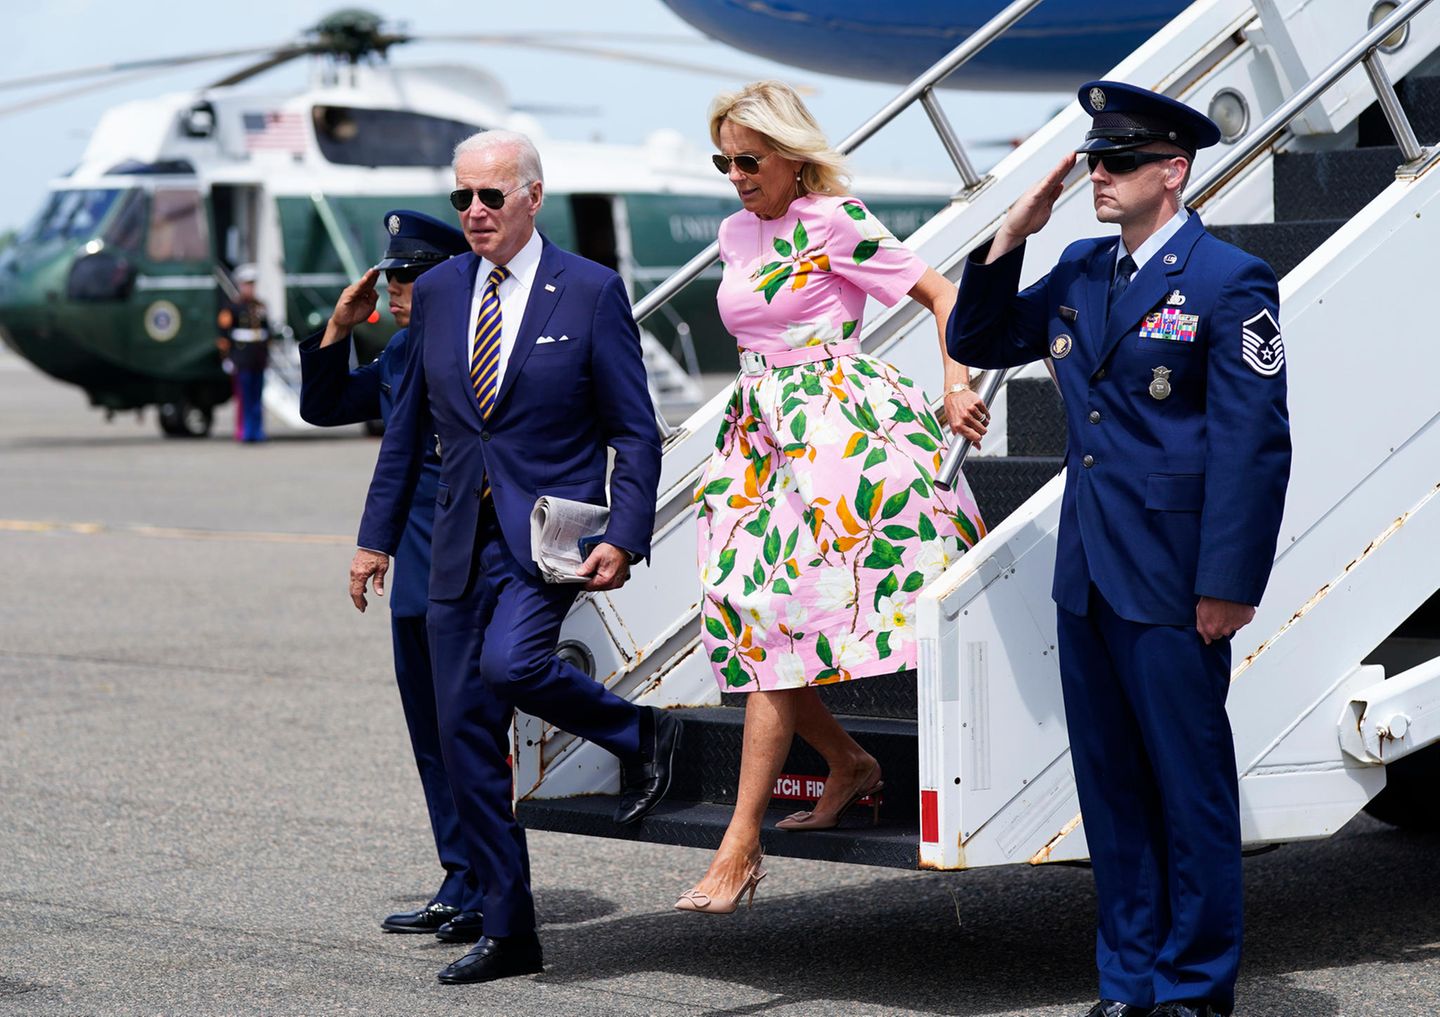 US-Präsident Joe Biden und seine Frau Jill können ihre einwöchigen Sommerferien starten, und gleich der erste Urlaubslook der First Lady ist ein blumiger Blickfang in zartem Pink. Zusammen mit ihrer Familie geht es nach South Carolina.